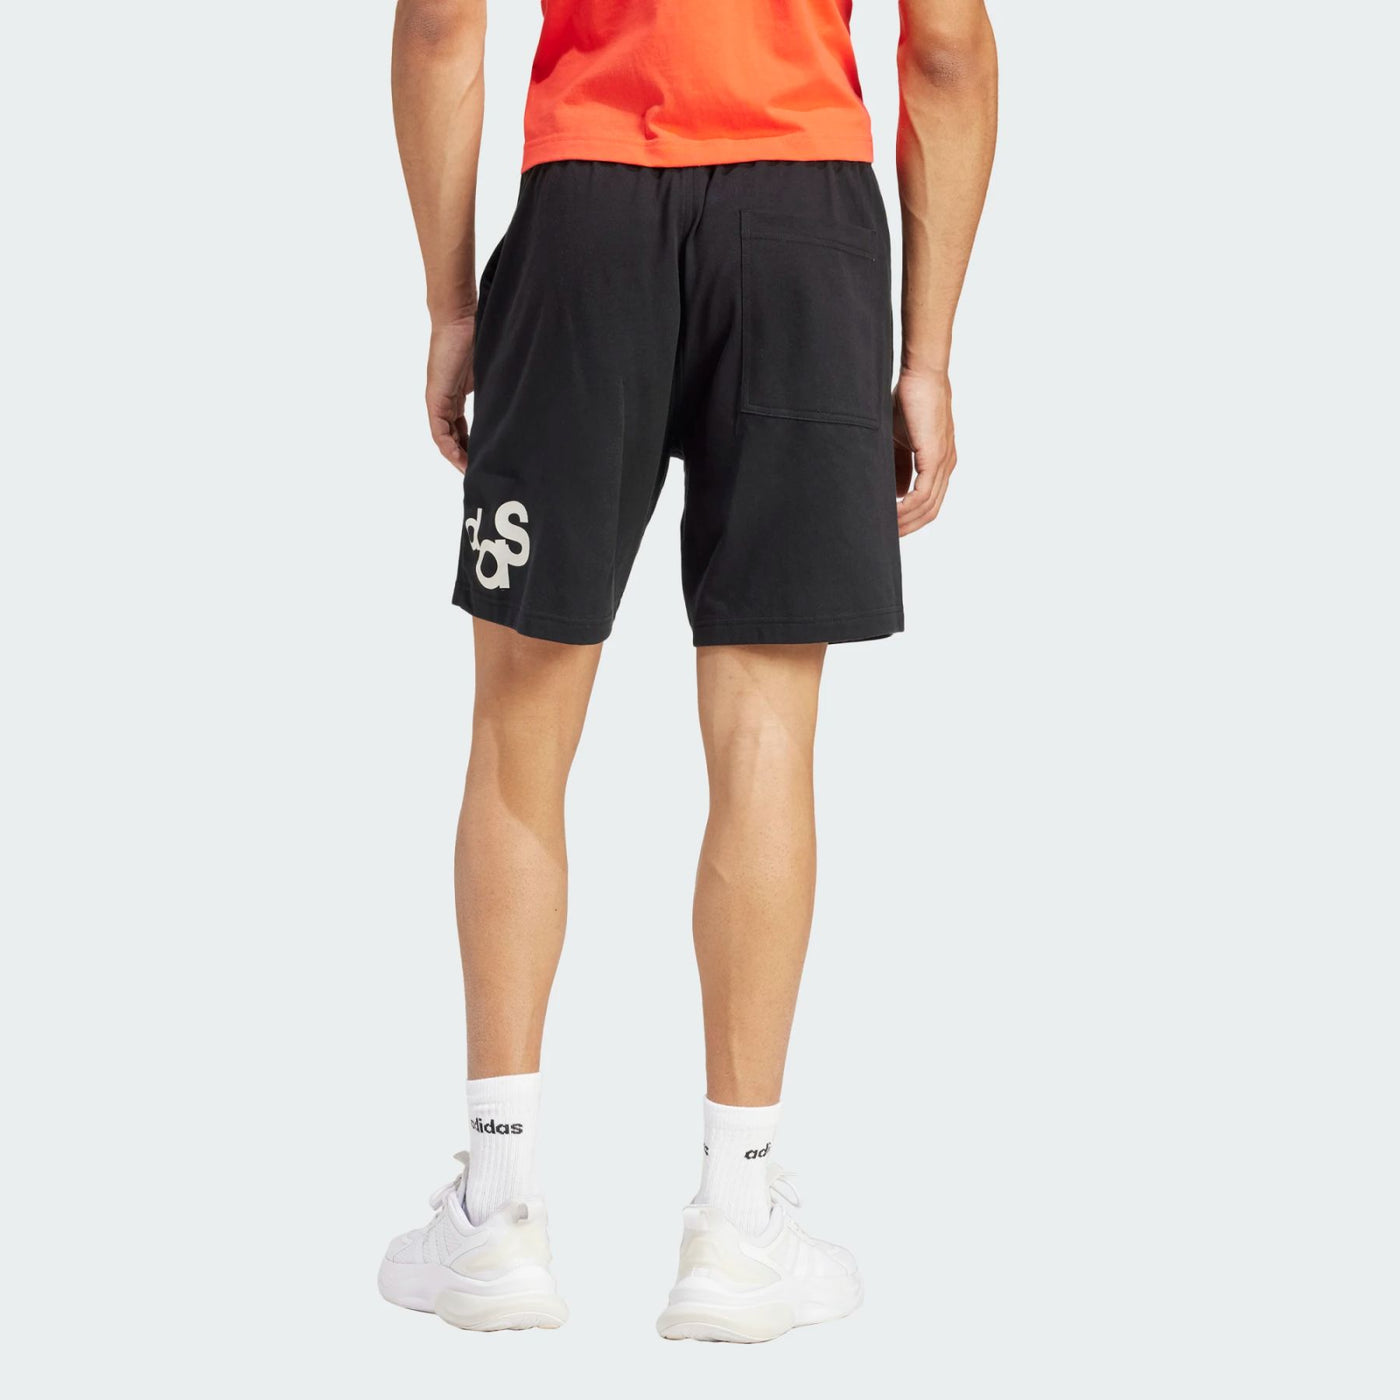 IP3801 - Shorts - Adidas